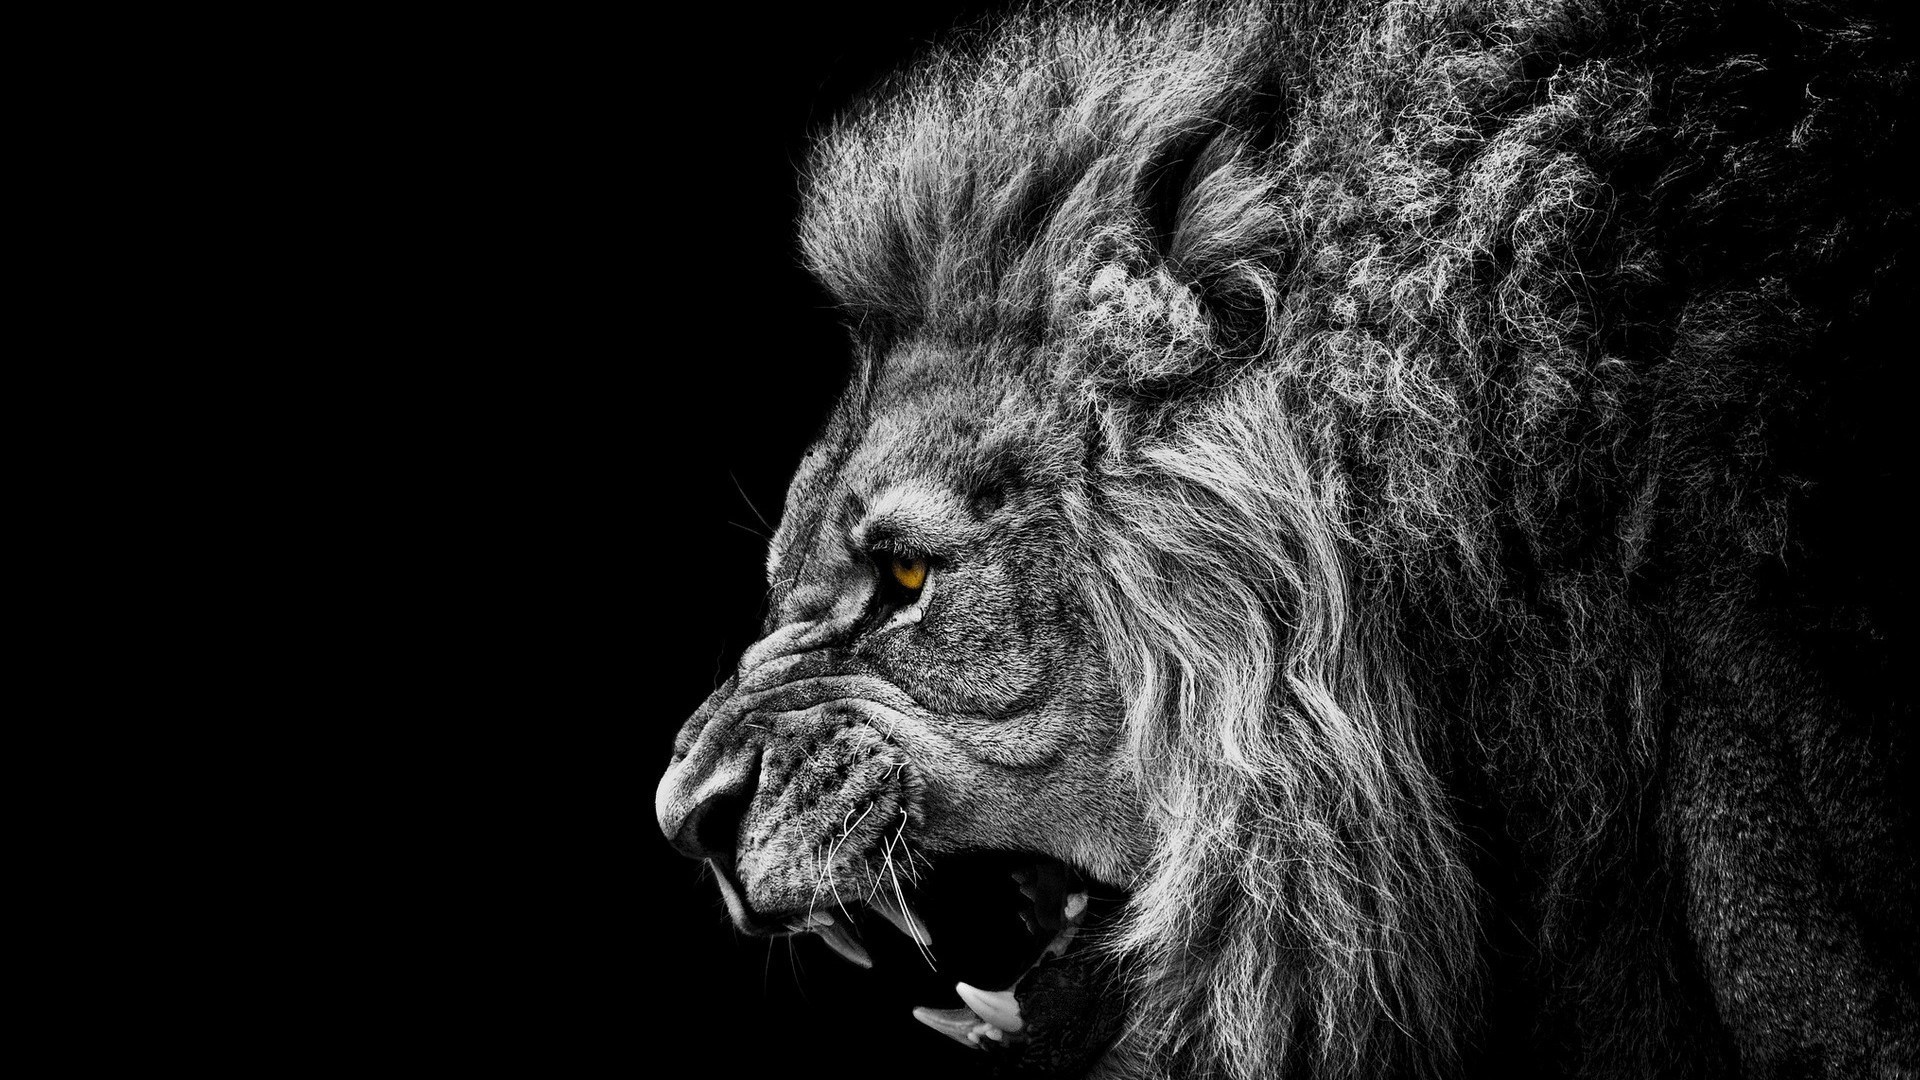 львы млекопитающее портрет животное кошка мех дикой природы один лев зоопарк монохромный волосы